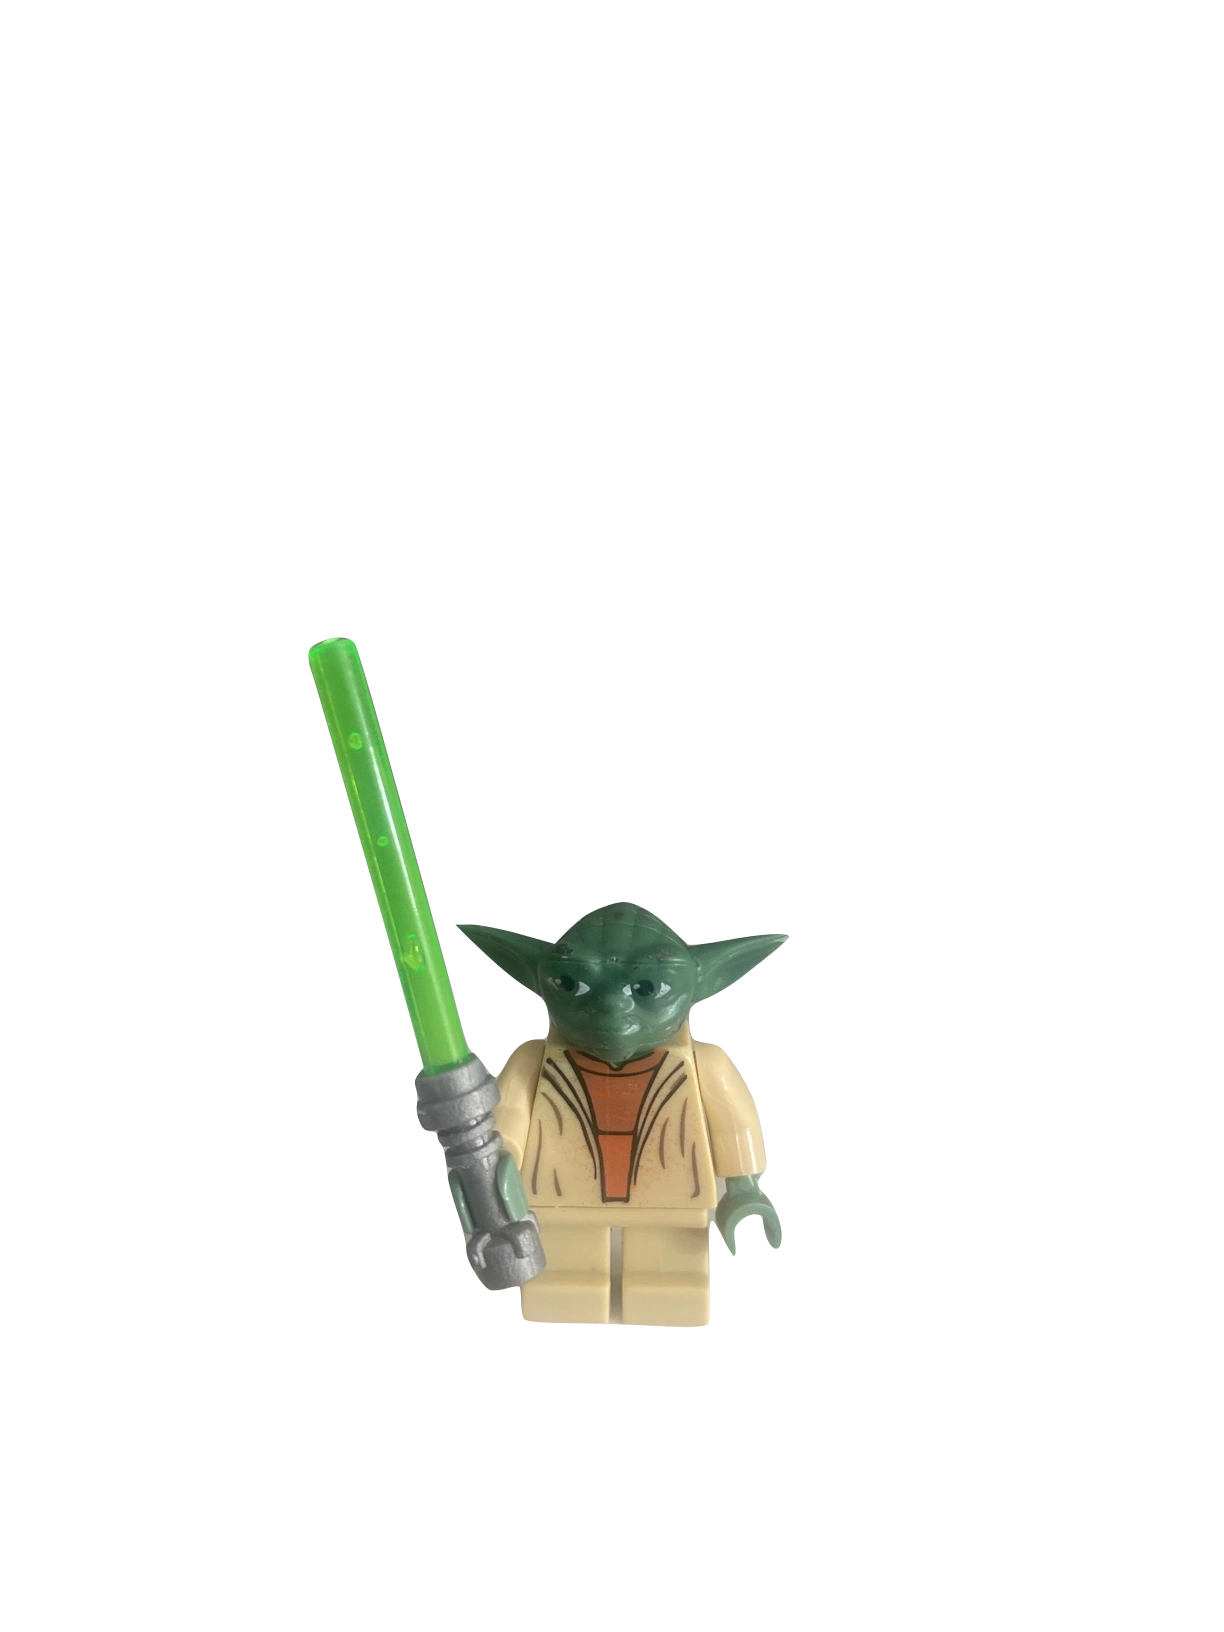 Photo frame "Yoda"